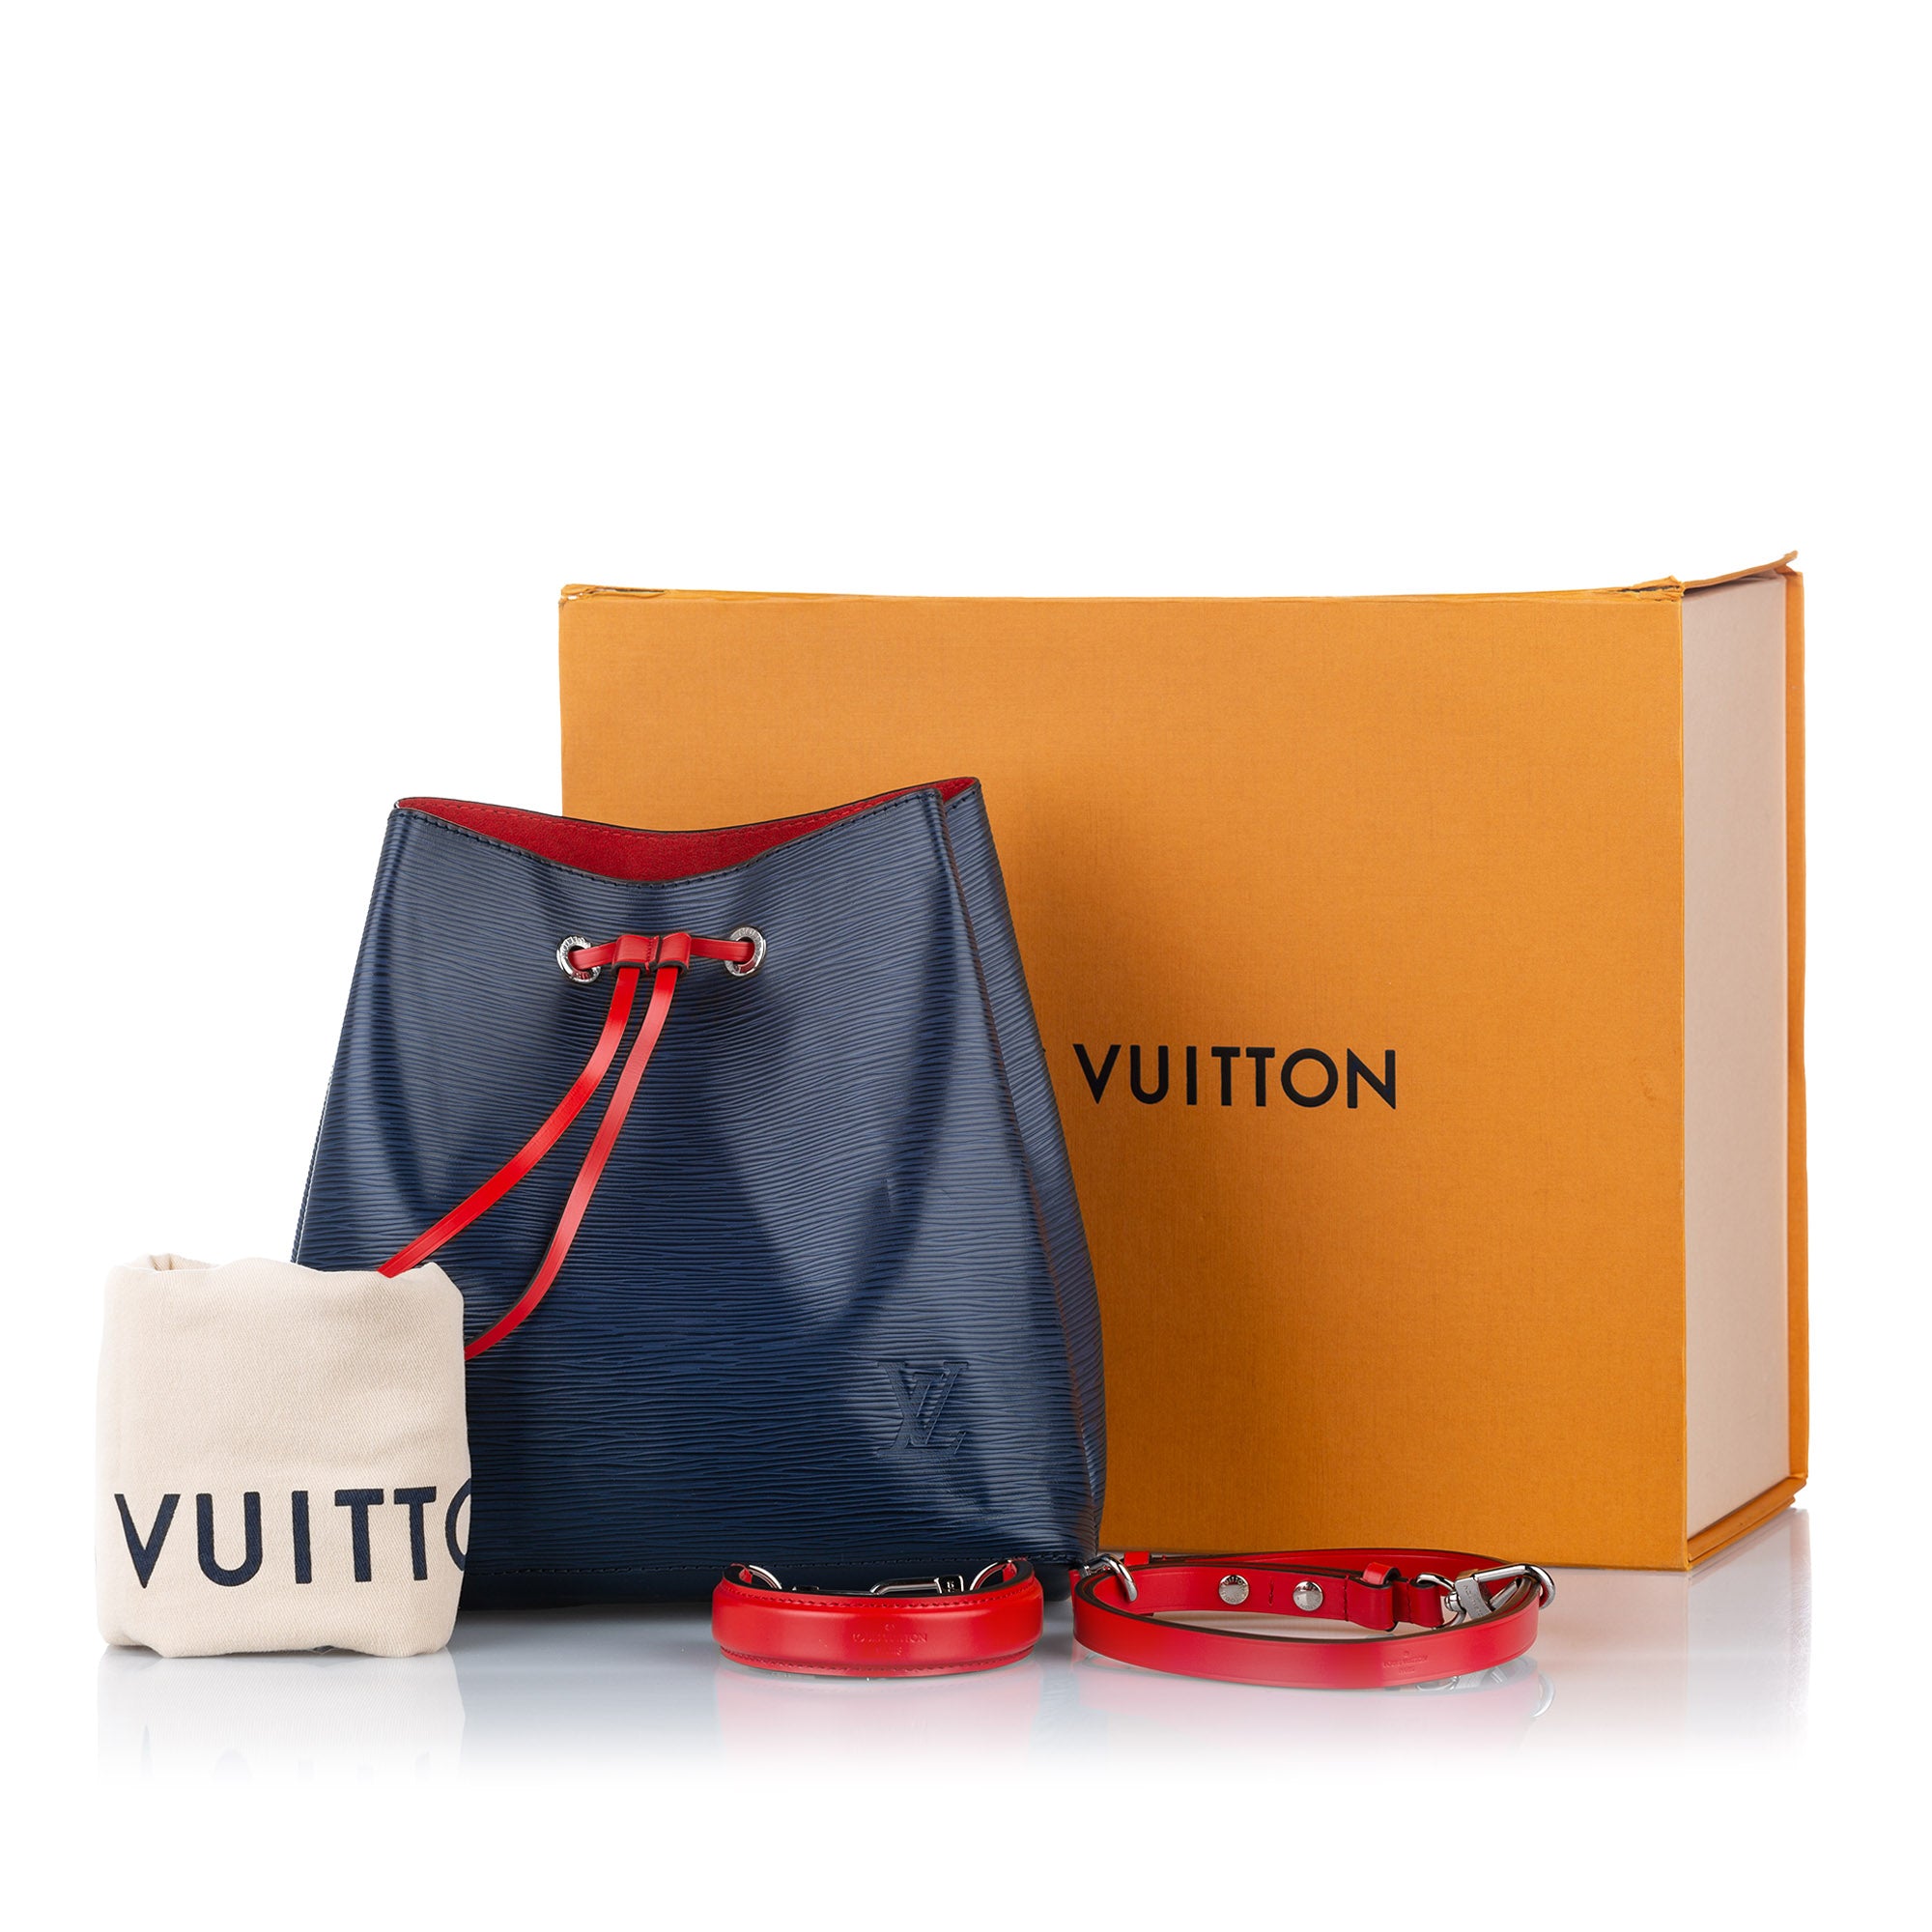 Preloved Louis Vuitton Rose Ballerine EPI Leather Grenelle PM Shoulder Bag CA0169 092623